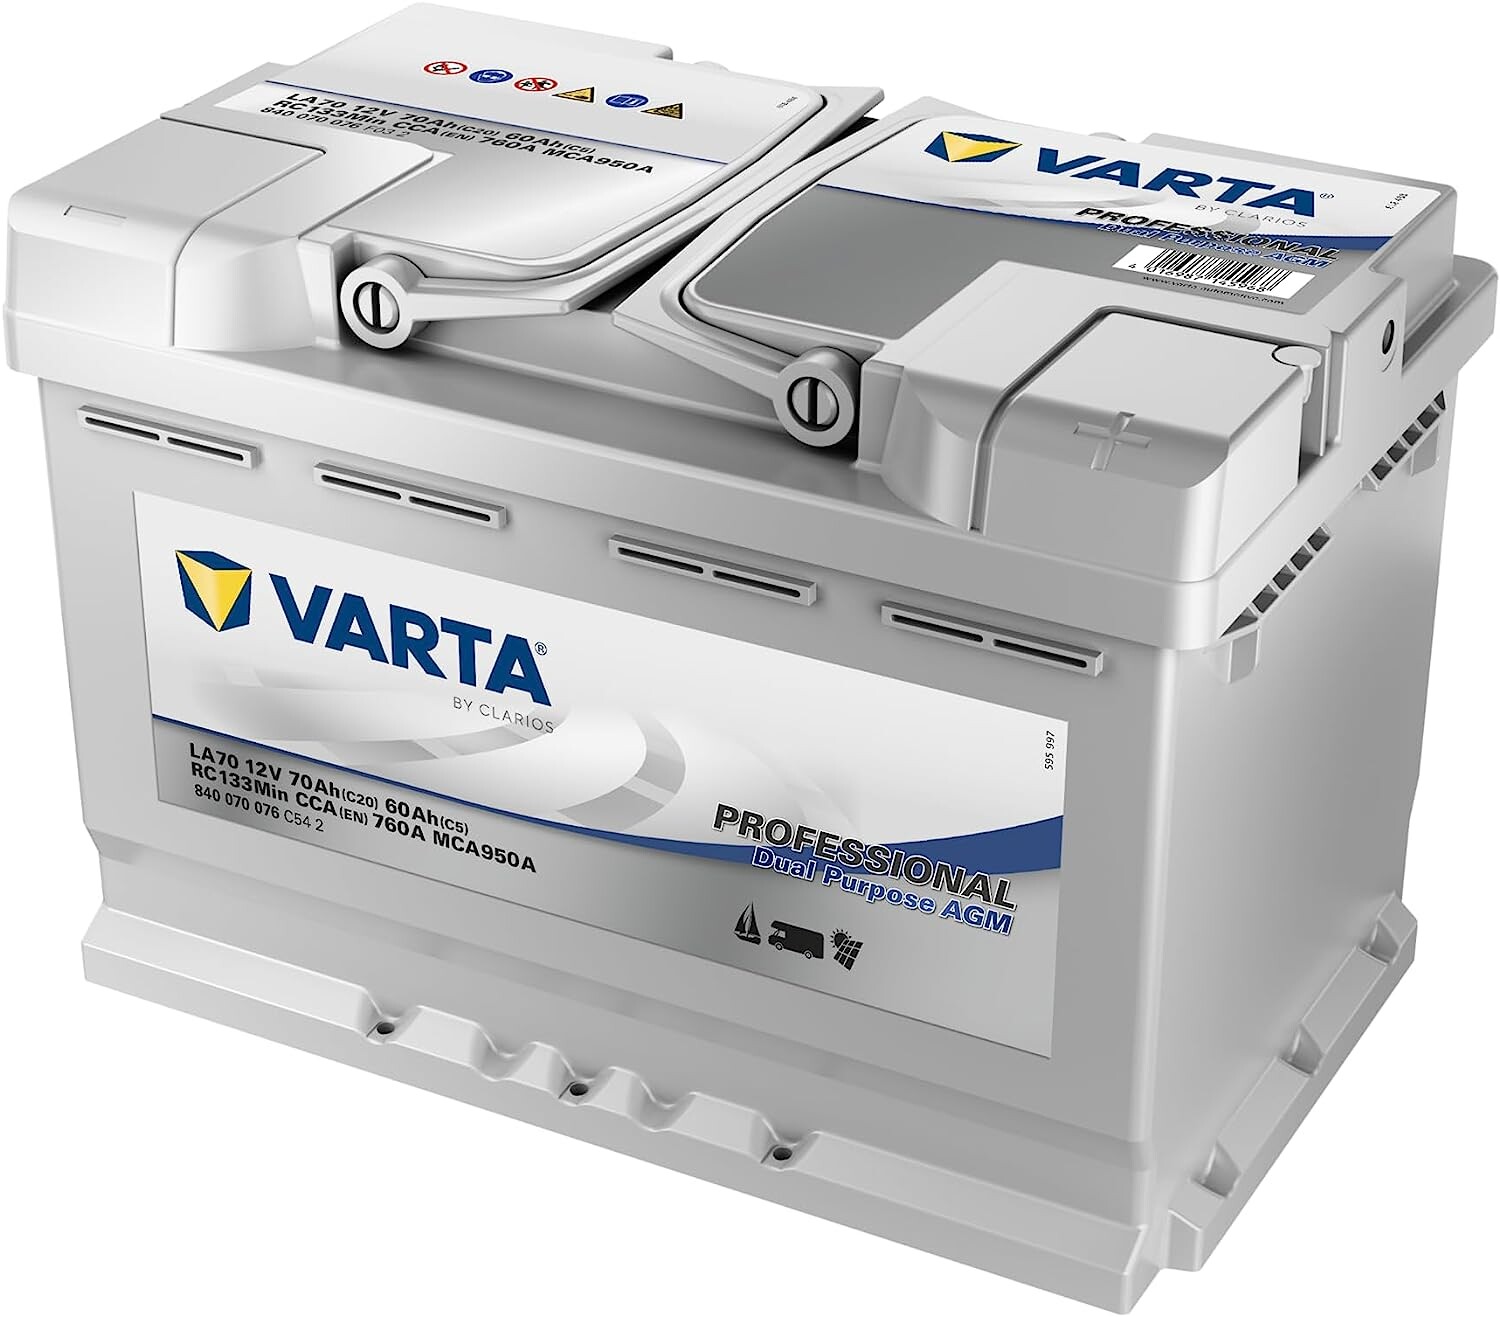 Power boat battery VARTA Professional AGM LA70 70Ah (20h) 7-840070076 Boat  Batteries pirkti internetu, prekė pristatoma nurodytu adresu, užsakykite,  parduotuvė Rygoje